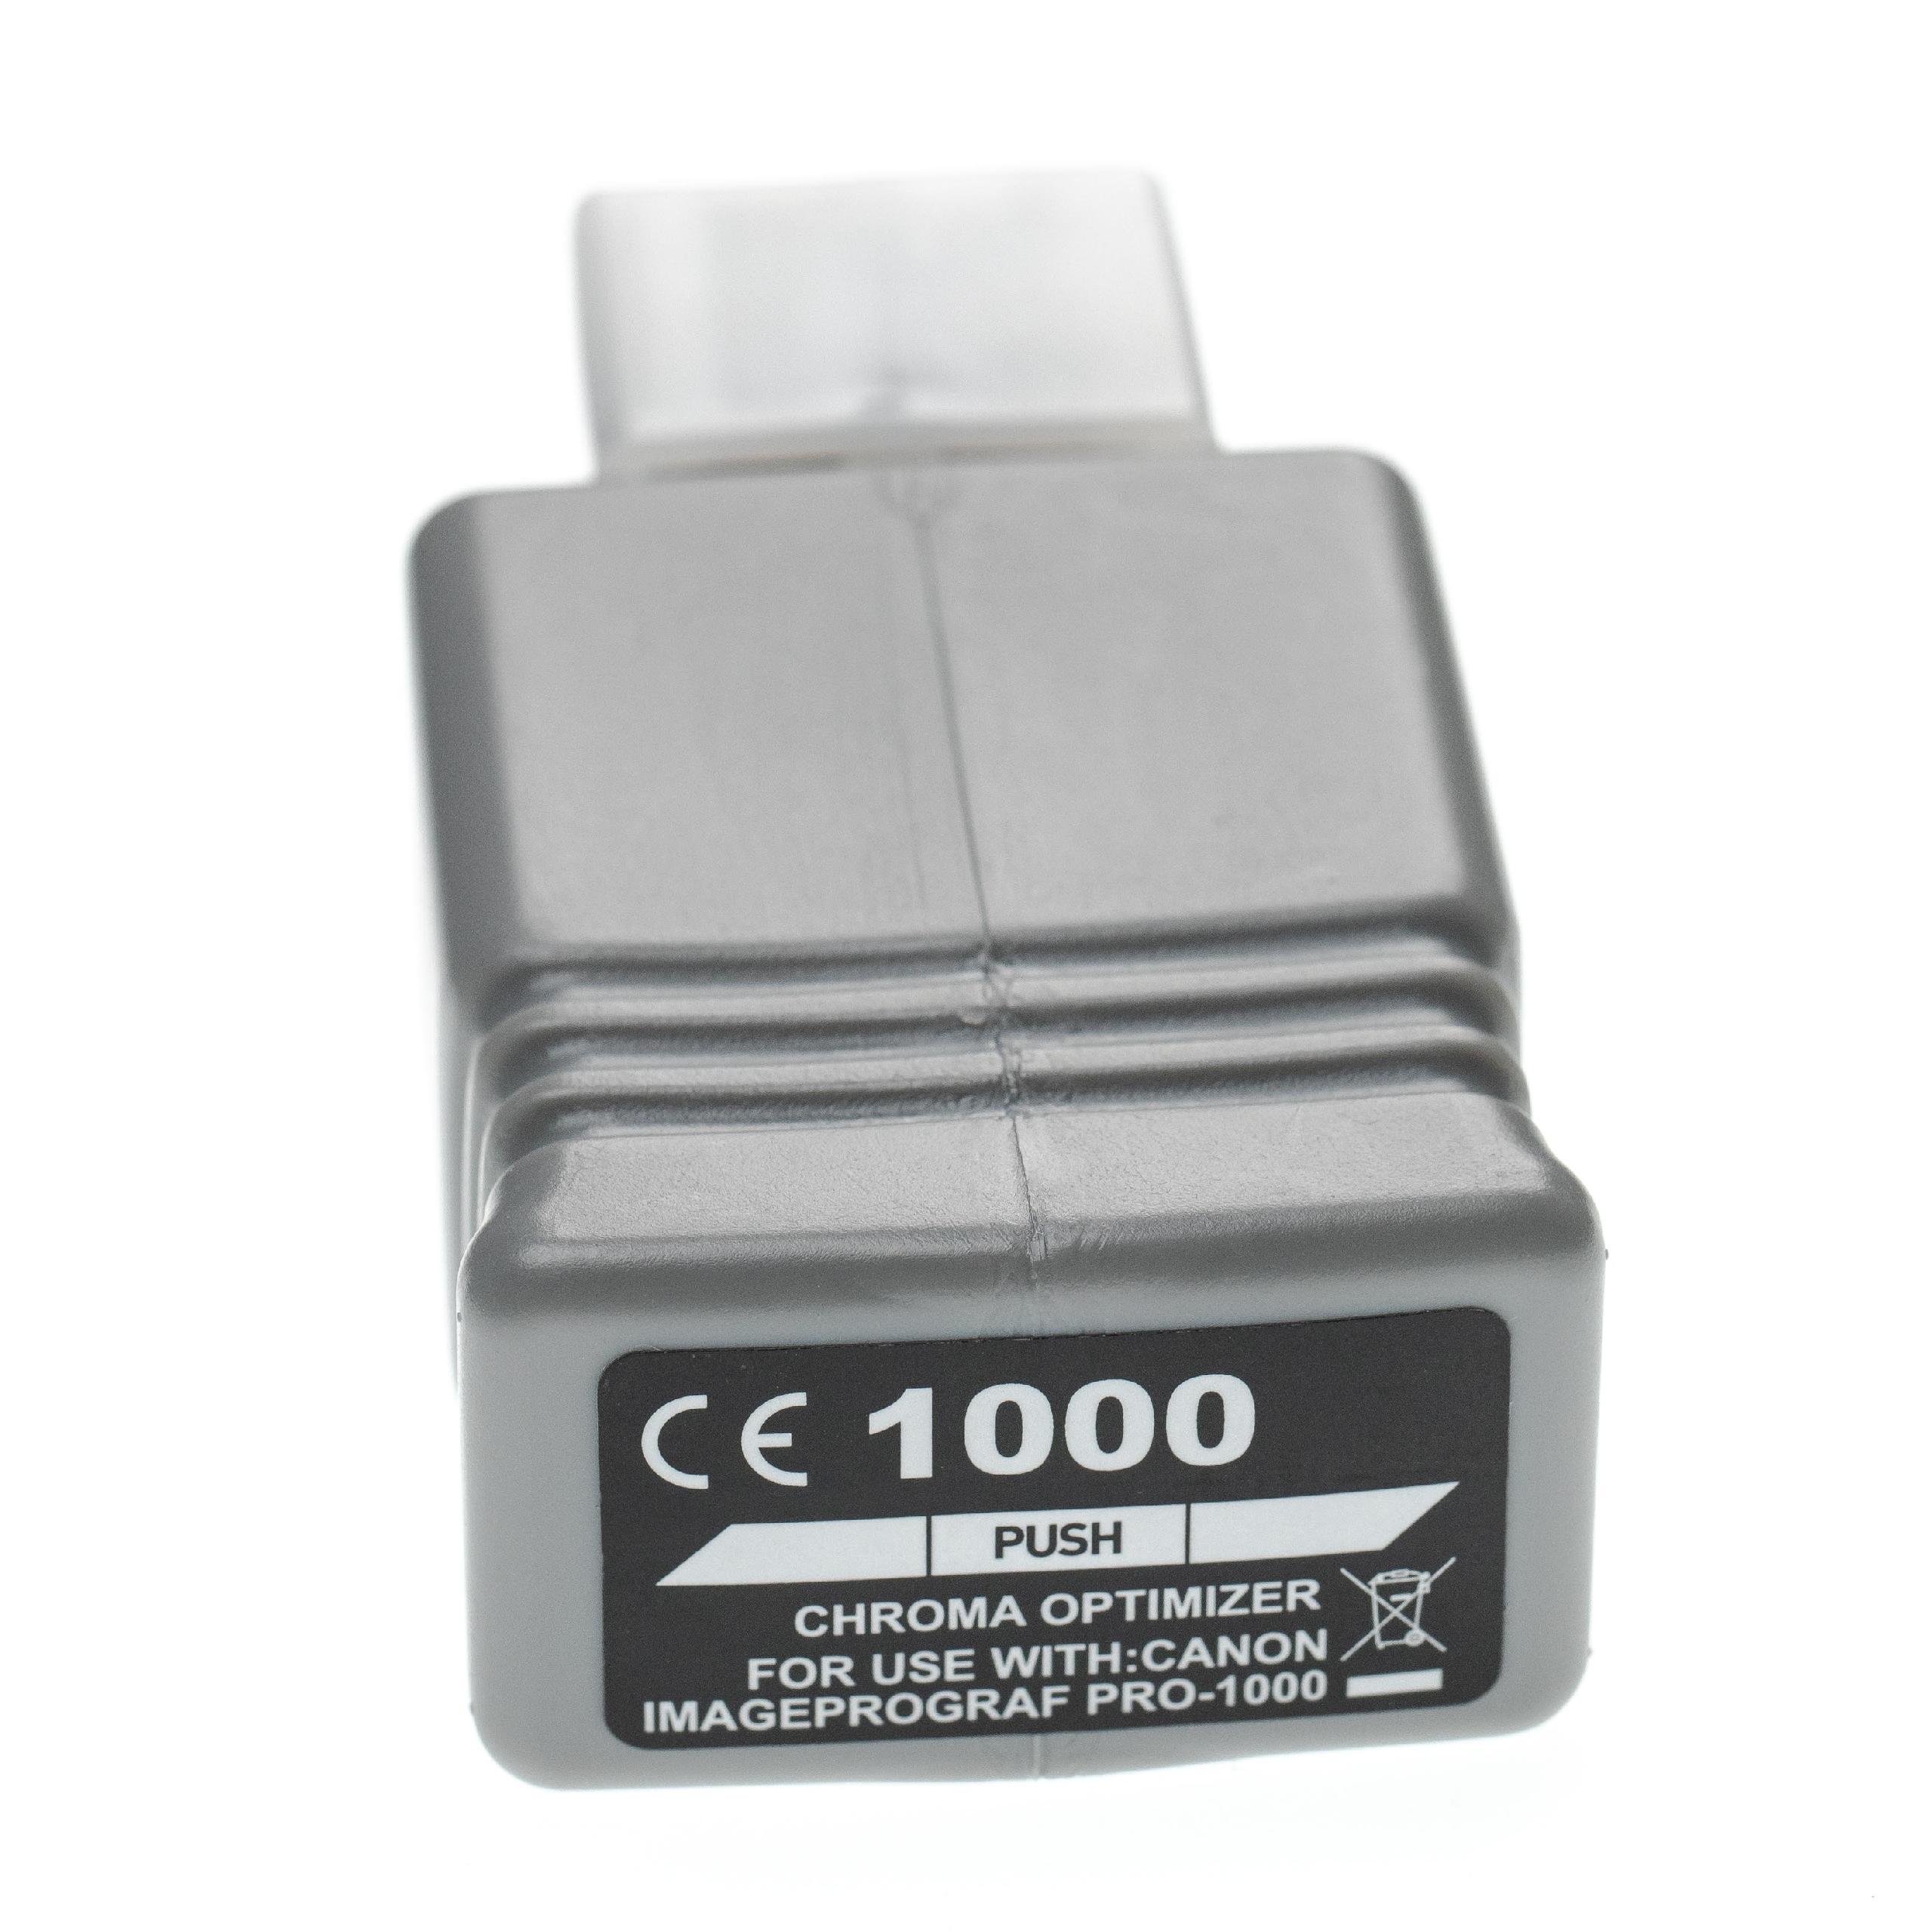 Tintenpatrone als Ersatz für Canon PFI-1000CO für Canon Drucker - Chroma Optimizer 80ml + Chip